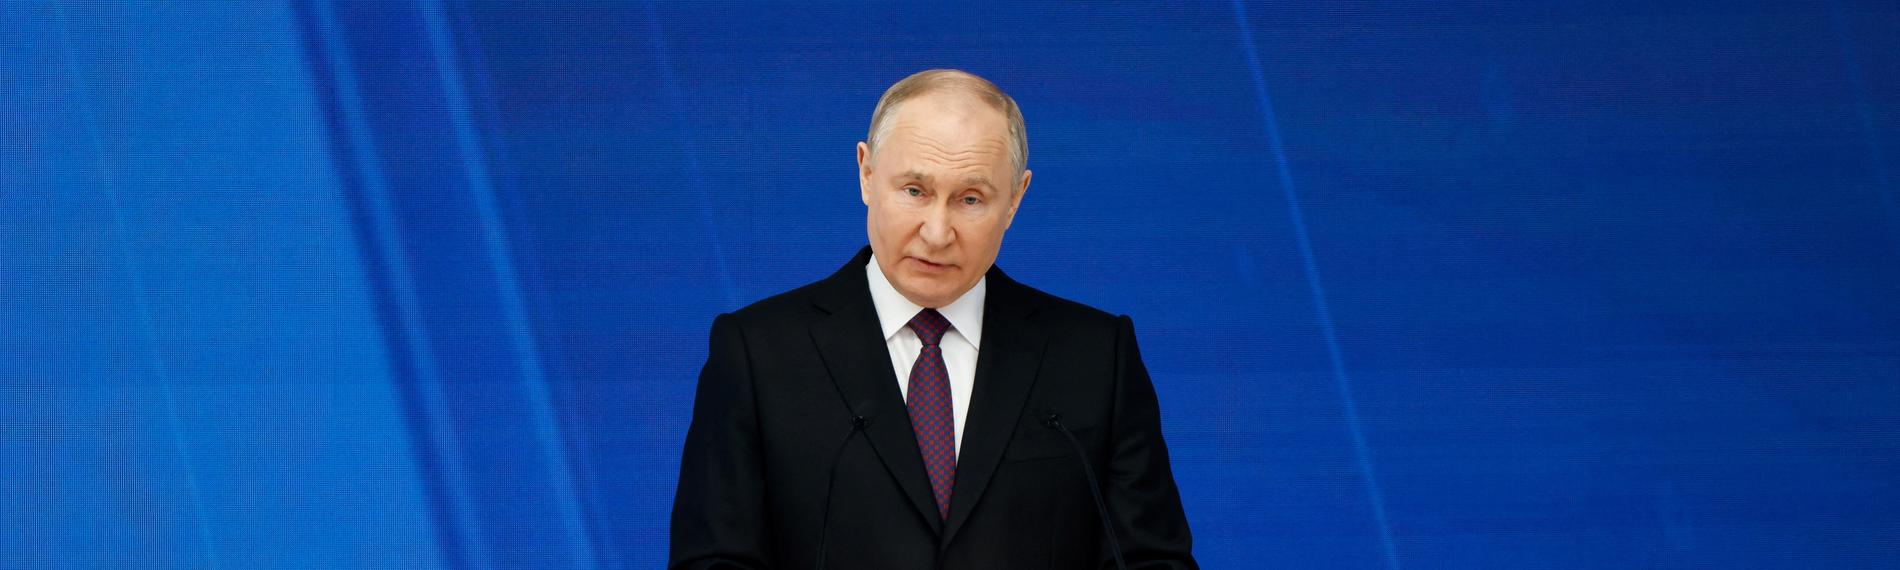 Der russische Präsident Wladimir Putin hält seine jährliche Rede vor der föderalen Versammlung in Moskau.